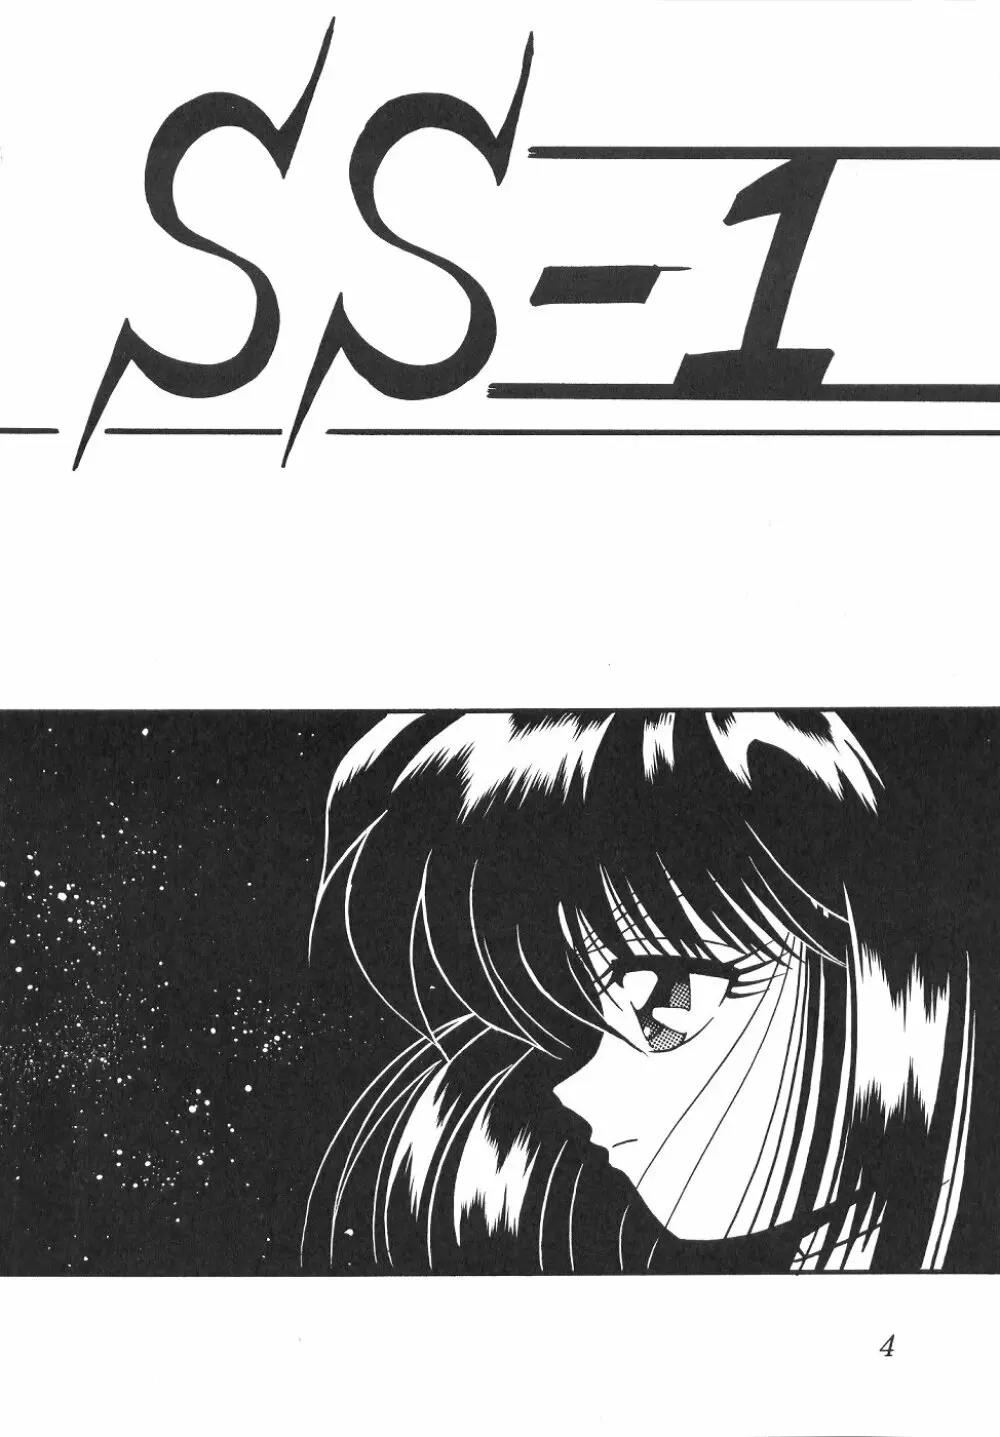 サイレント・サターン SS vol.1 3ページ